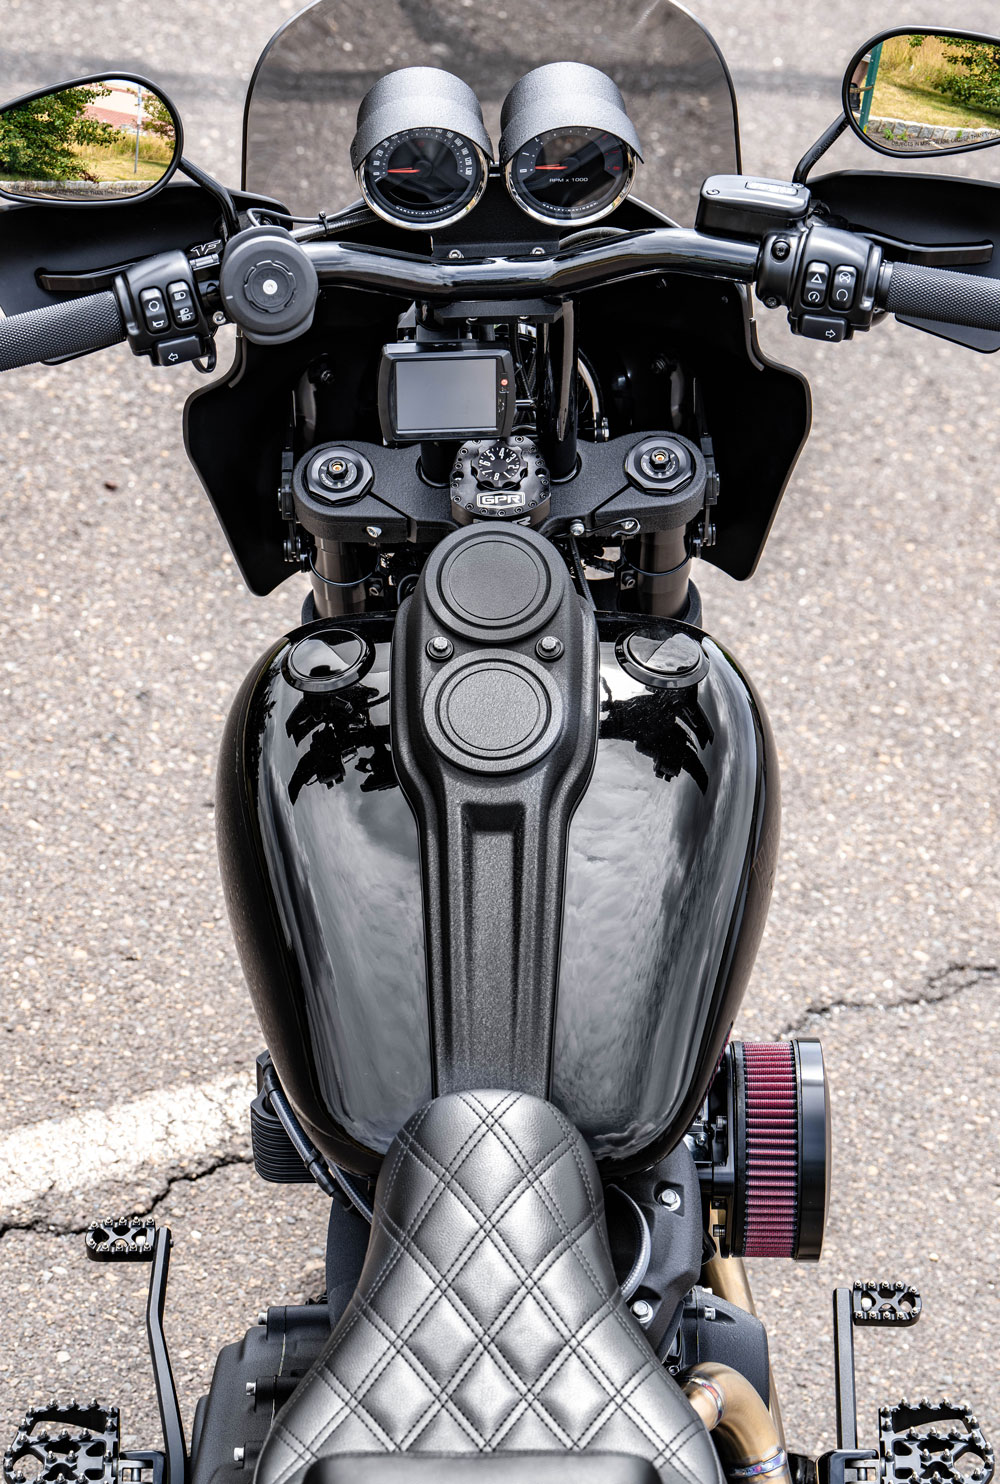 2020 Harley Low Rider S Ohlins FKS 508 NIX 30 Kit